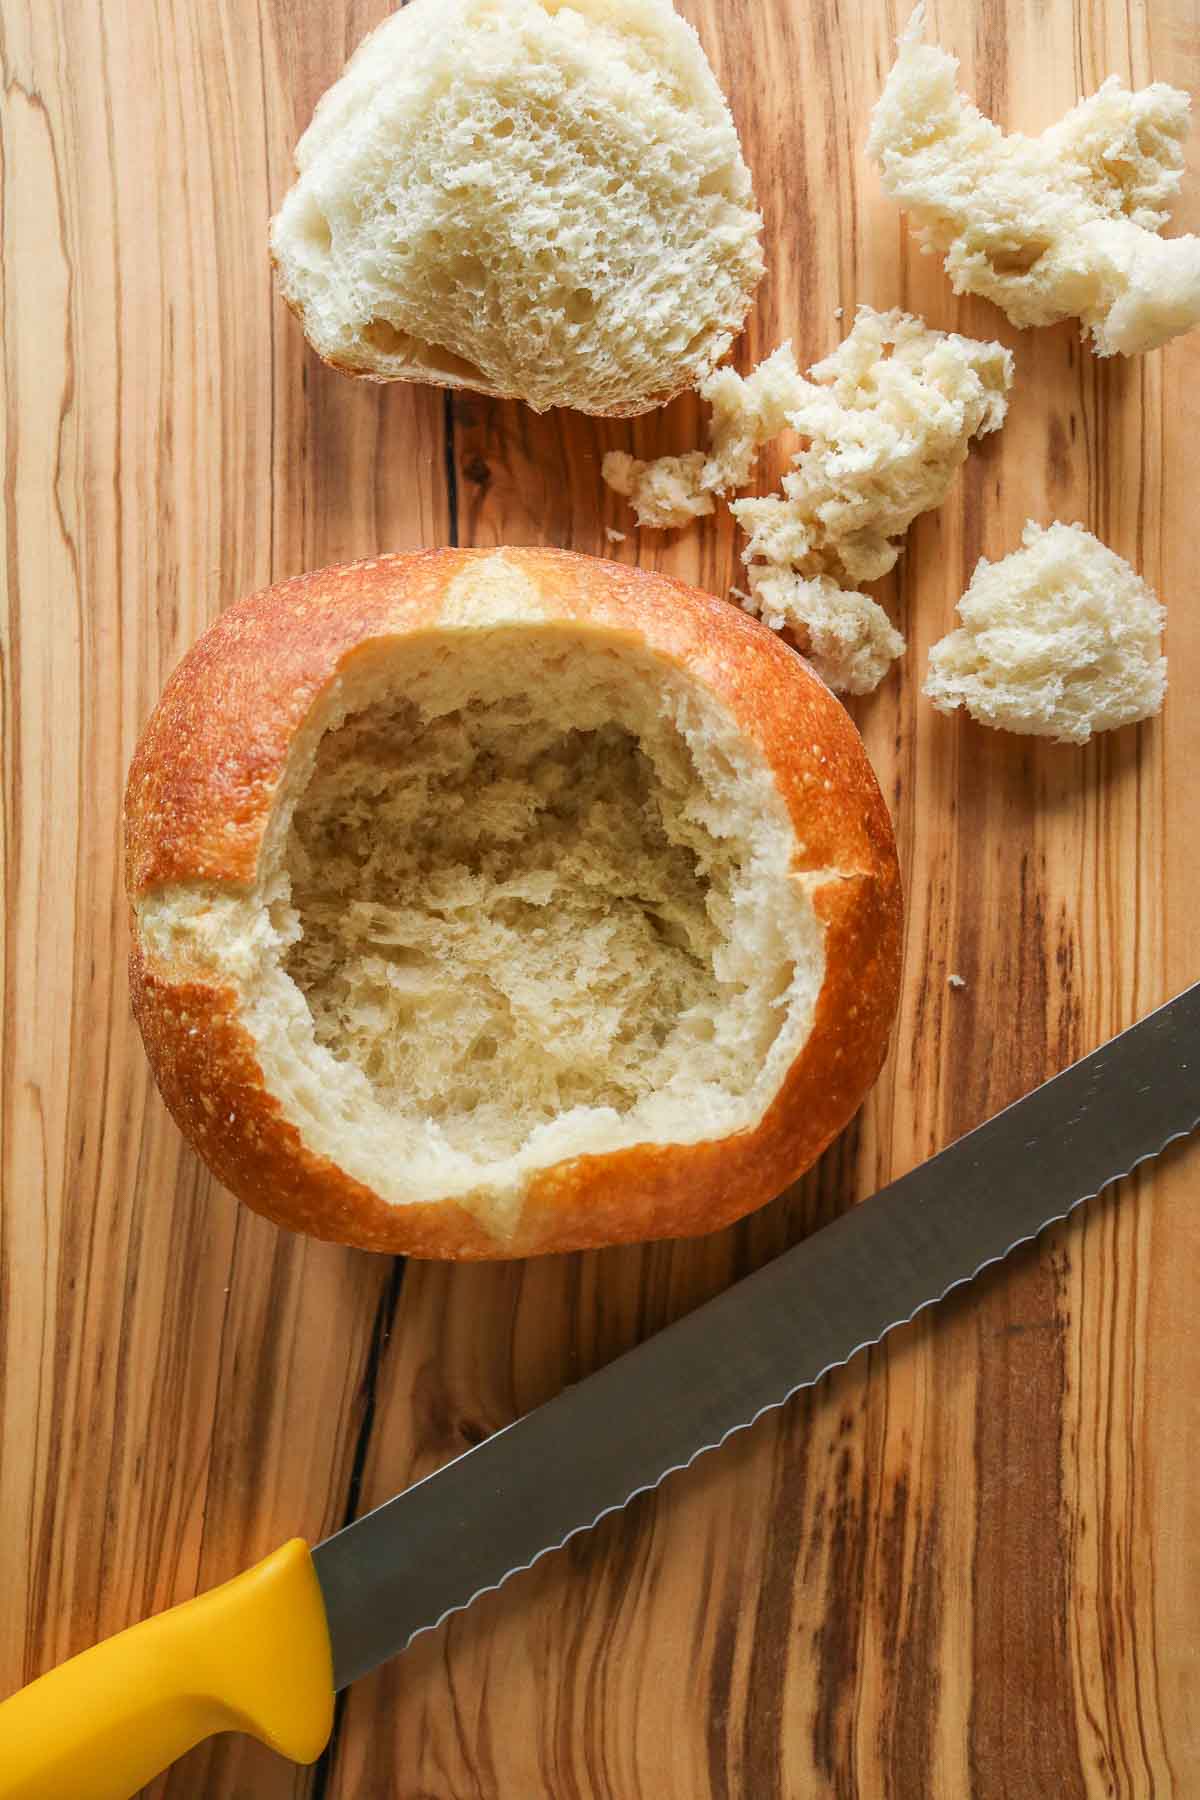 Sourdough bread bowl alongside a knife.